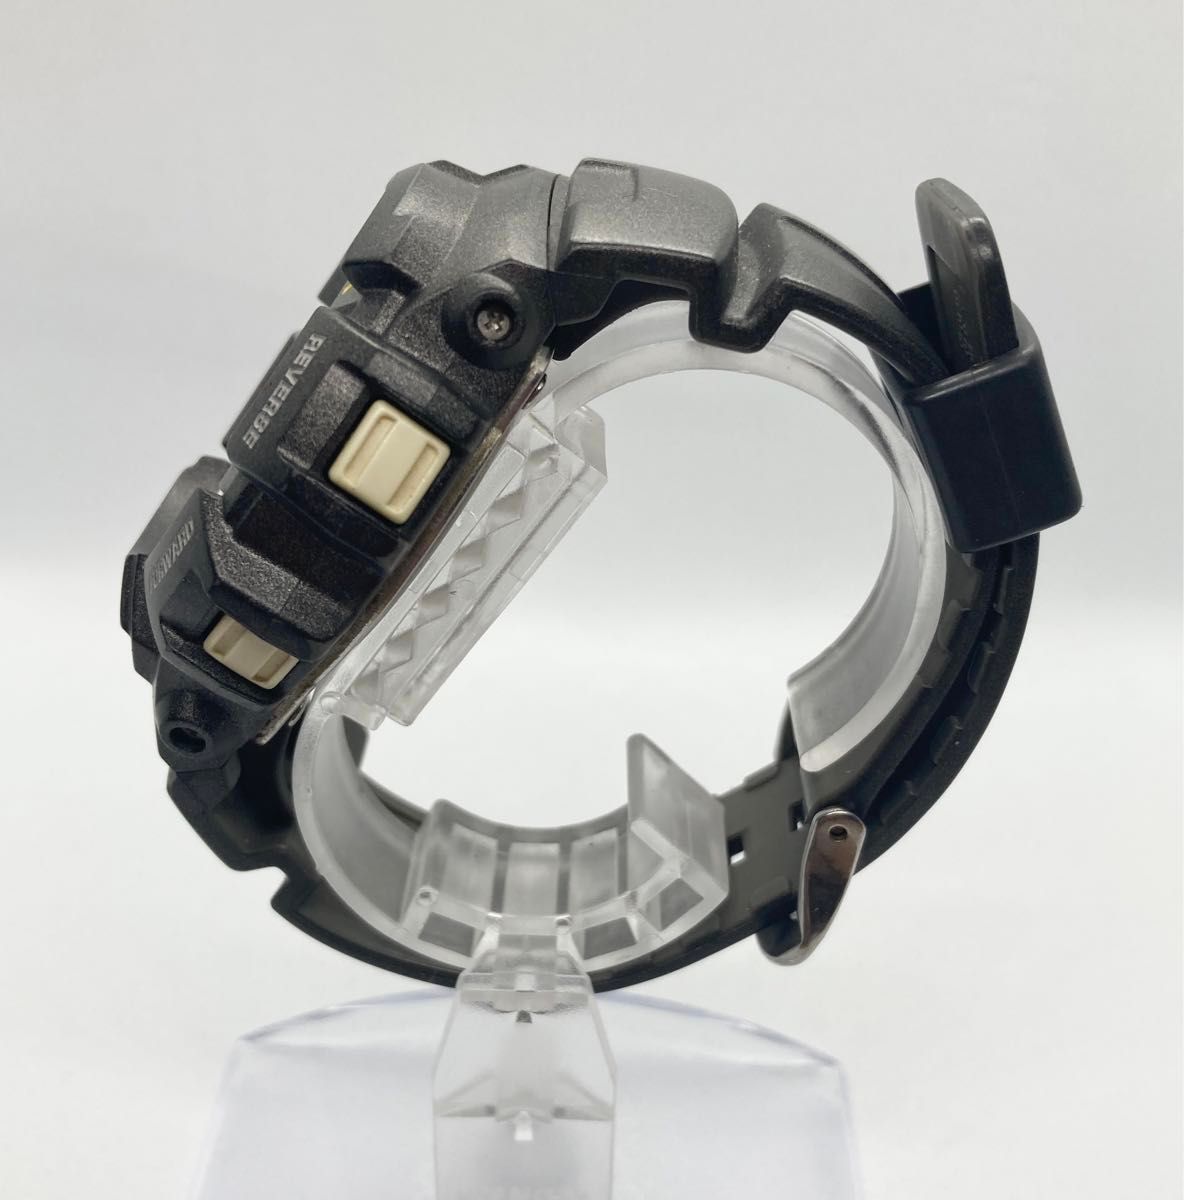 電池新品 CASIO ジーショック G-2110 G-SHOCK 腕時計